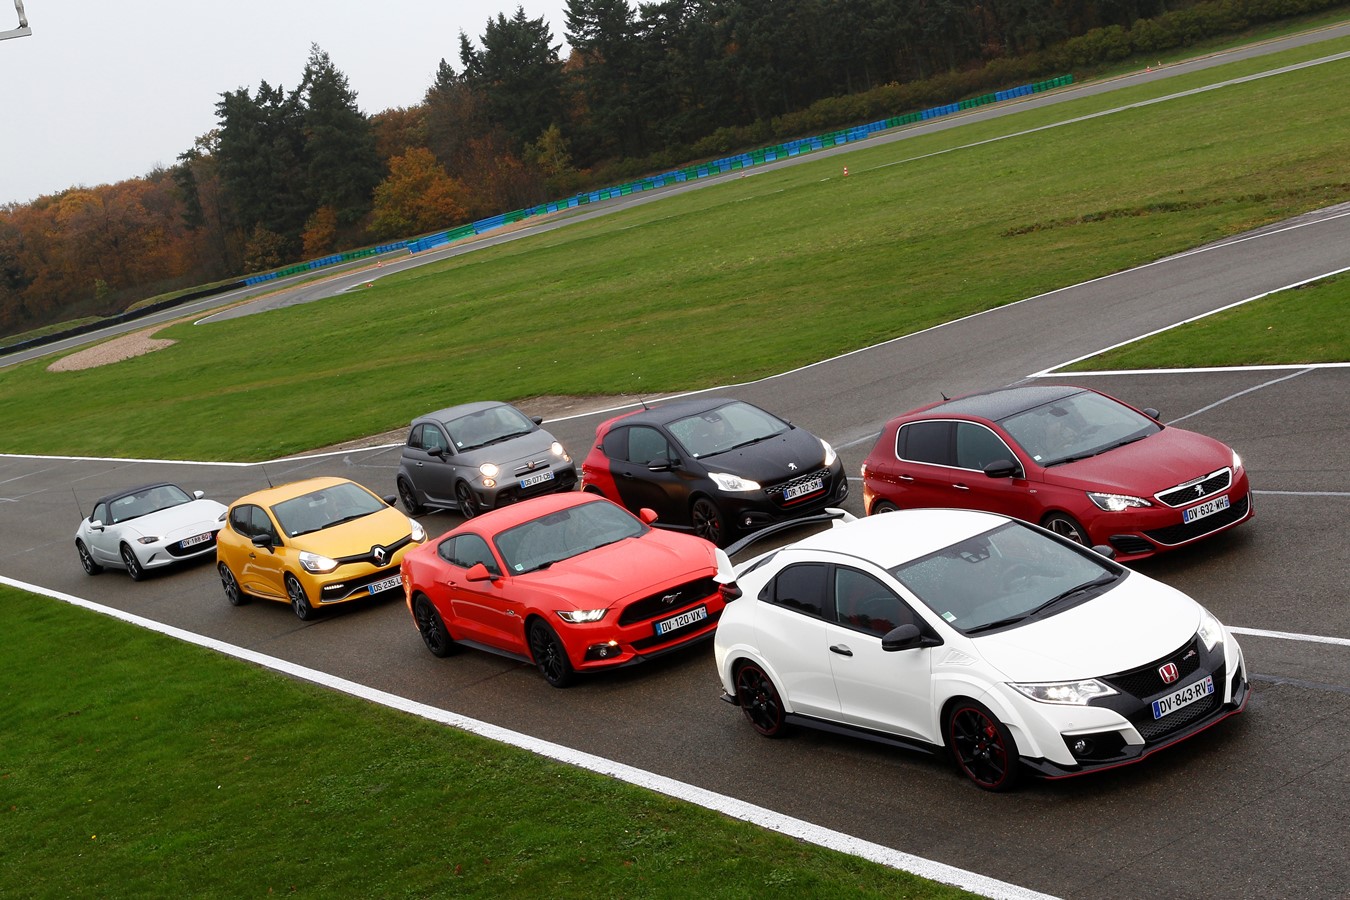 La Honda Civic Type R élue "Sportive de l’année 2015" par le magazine Echappement